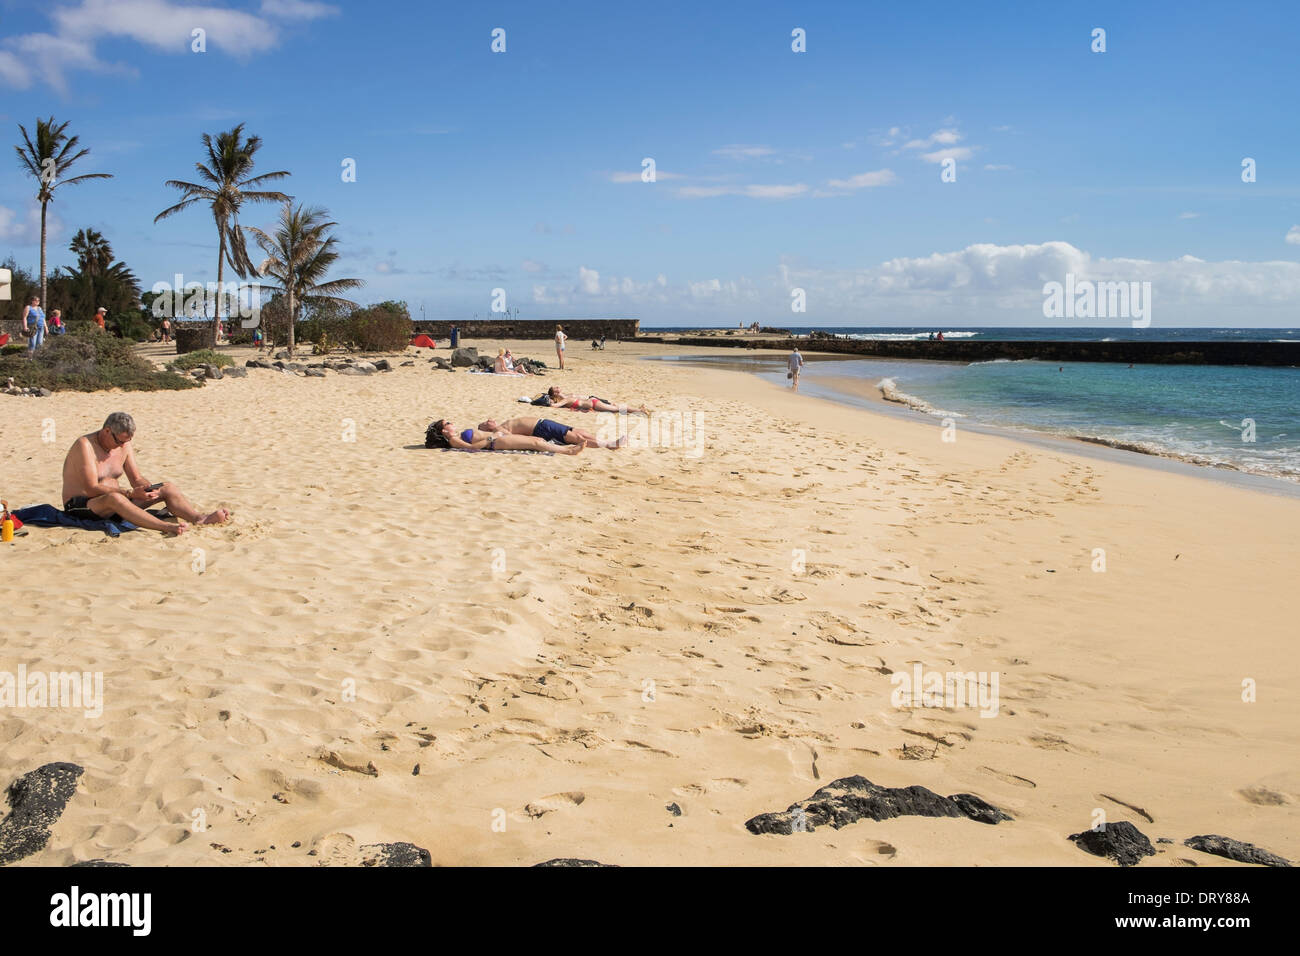 La gente a prendere il sole sulla spiaggia sabbiosa di Playa de Las Cucharas beach in Costa Teguise, Lanzarote, Isole Canarie, Spagna, Europa. Foto Stock